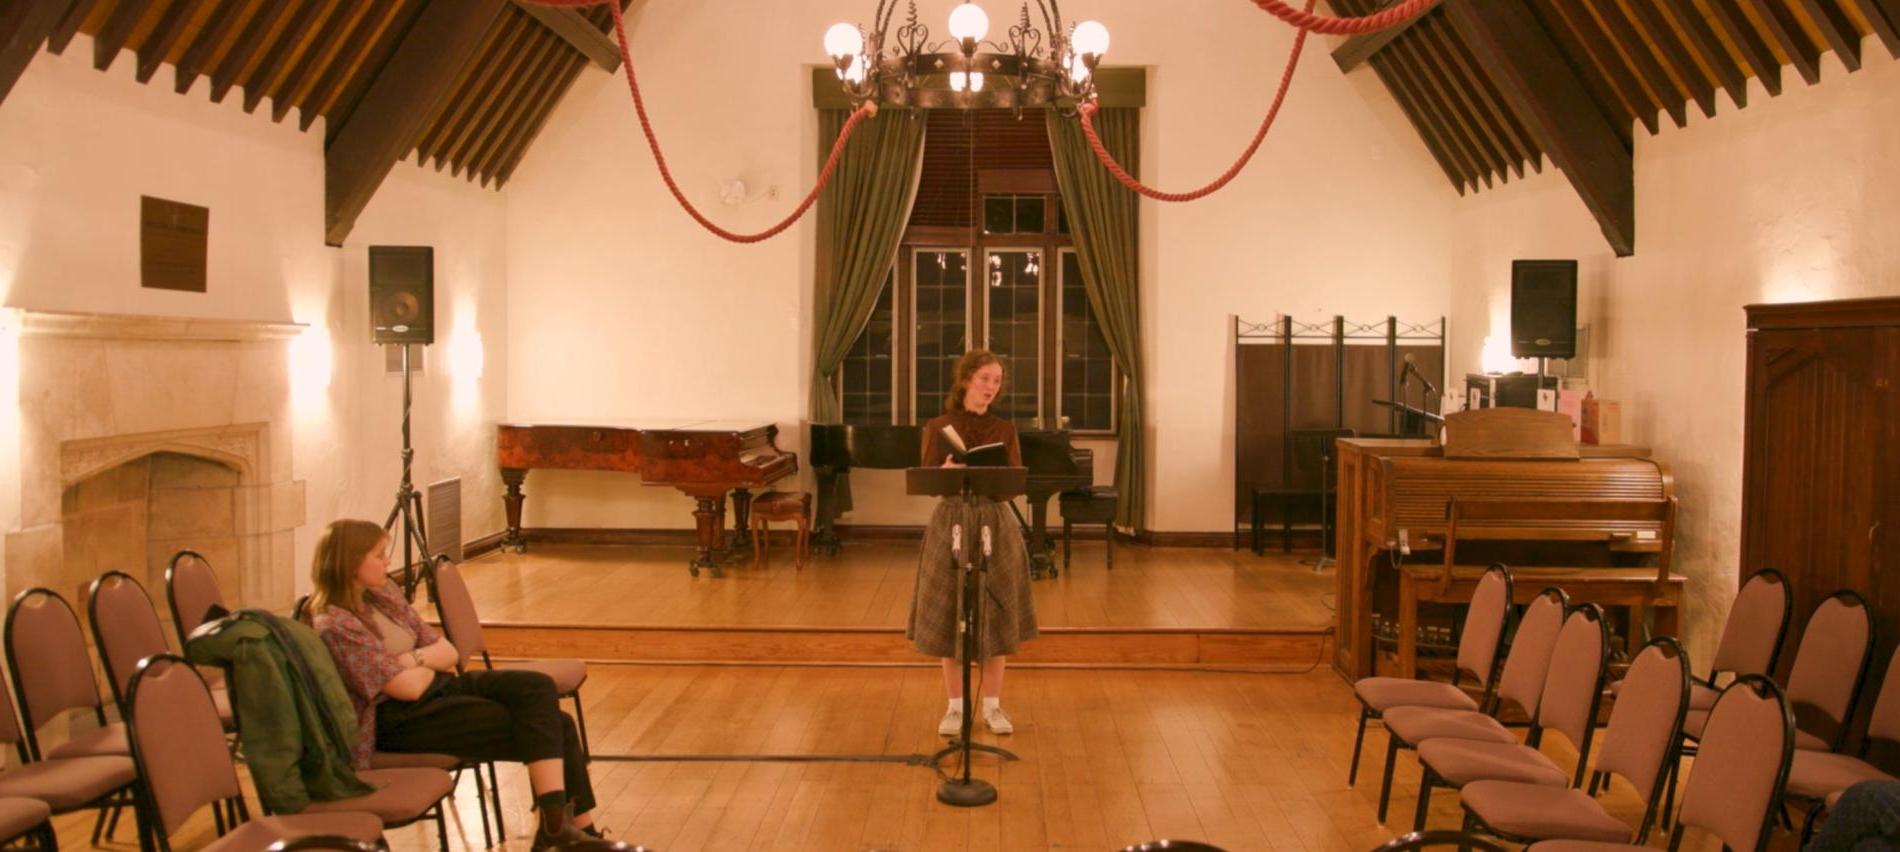 奥利维亚·科莱斯在表演贝瑟尼·柯林斯的作品时演唱《推荐全球十大博彩公司排行榜》, 赞美诗(2023)